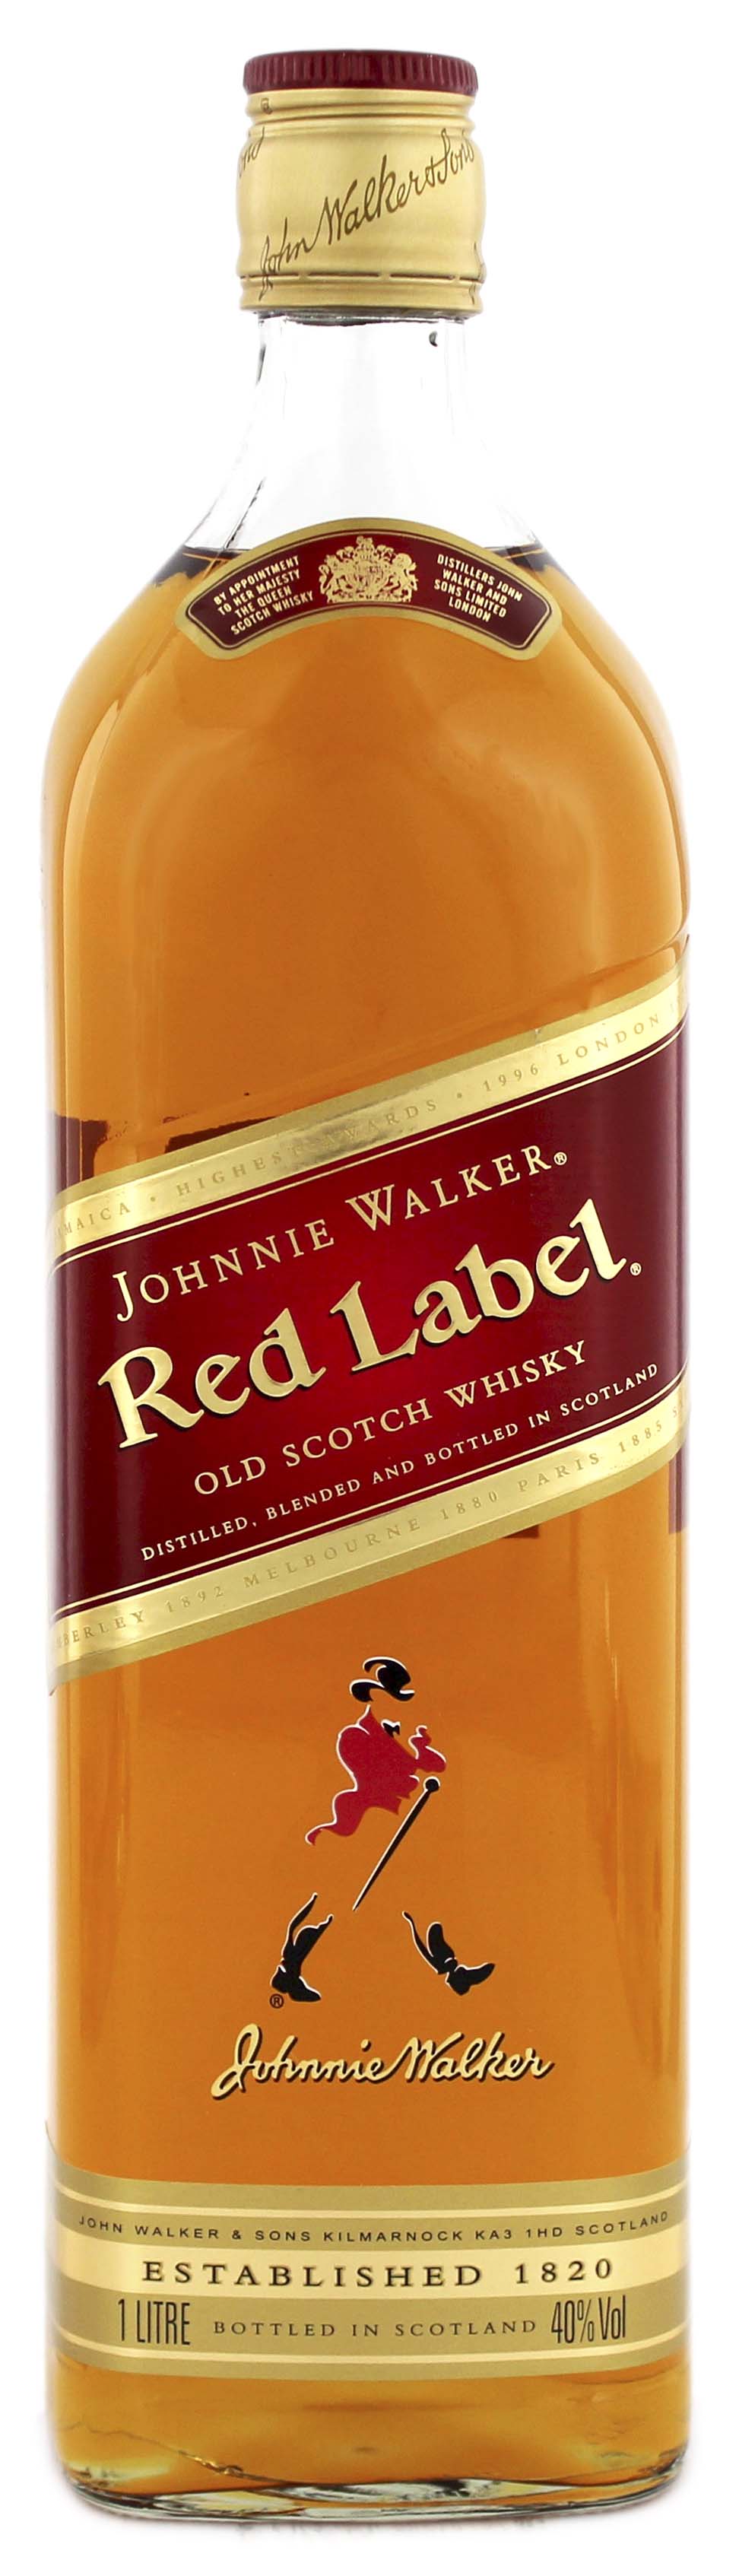 Johnnie Walker Scotch Whisky Online Whisky Shop kaufen im Red Label